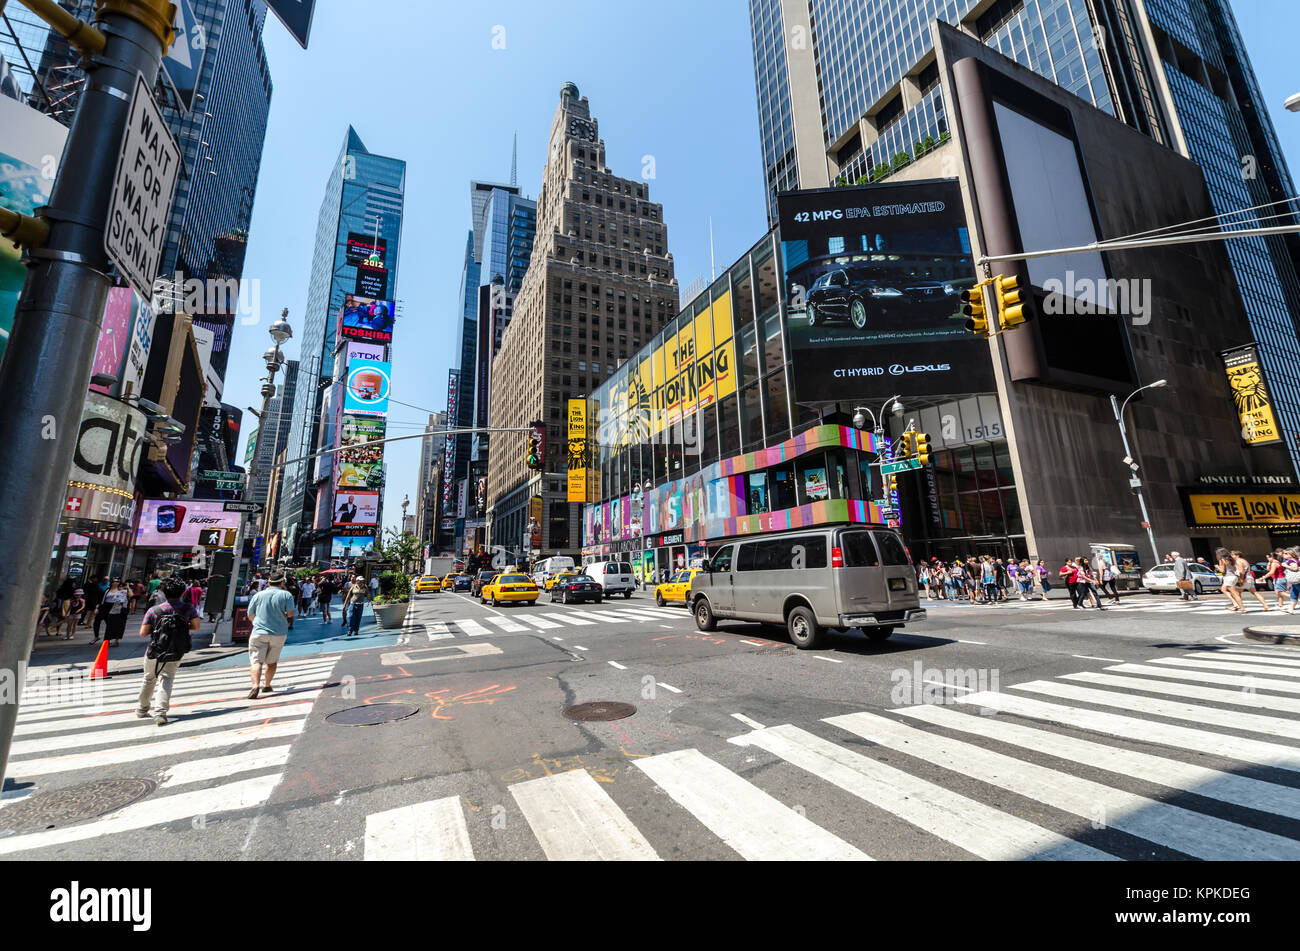 NEW YORK CITY - Juli 12: 1954-1990 Leute durch den Times Square Pass am 12. Juli 2012 in New York. Der Times Square ist einen wichtigen kommerziellen Kreuzung in M Stockfoto